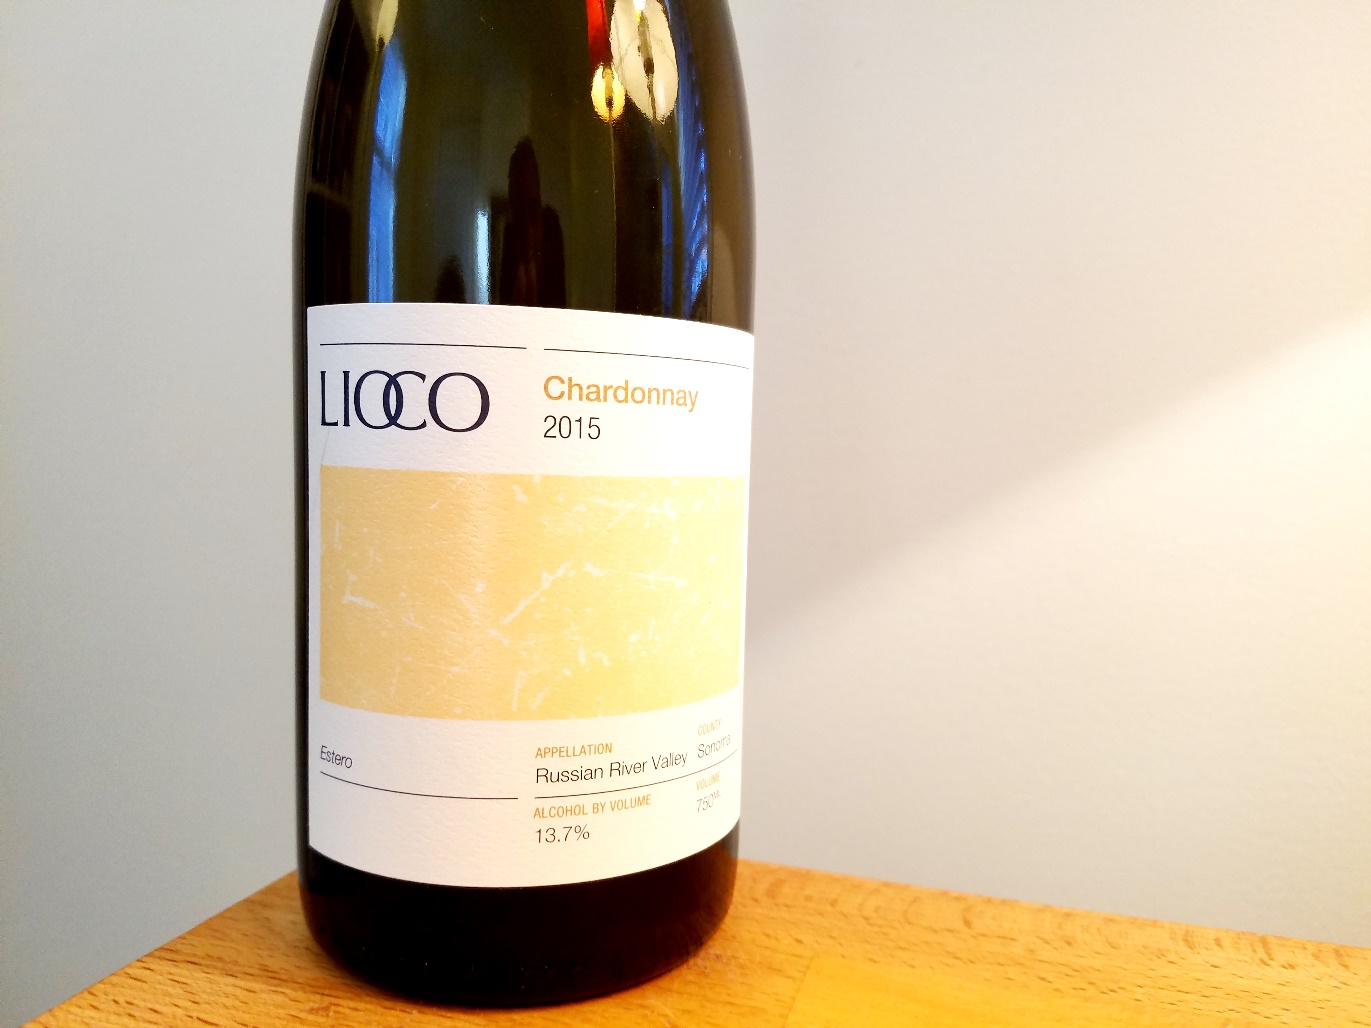 Lioco, Estero Chardonnay 2015, Russian River Valley, California, Wine Casual